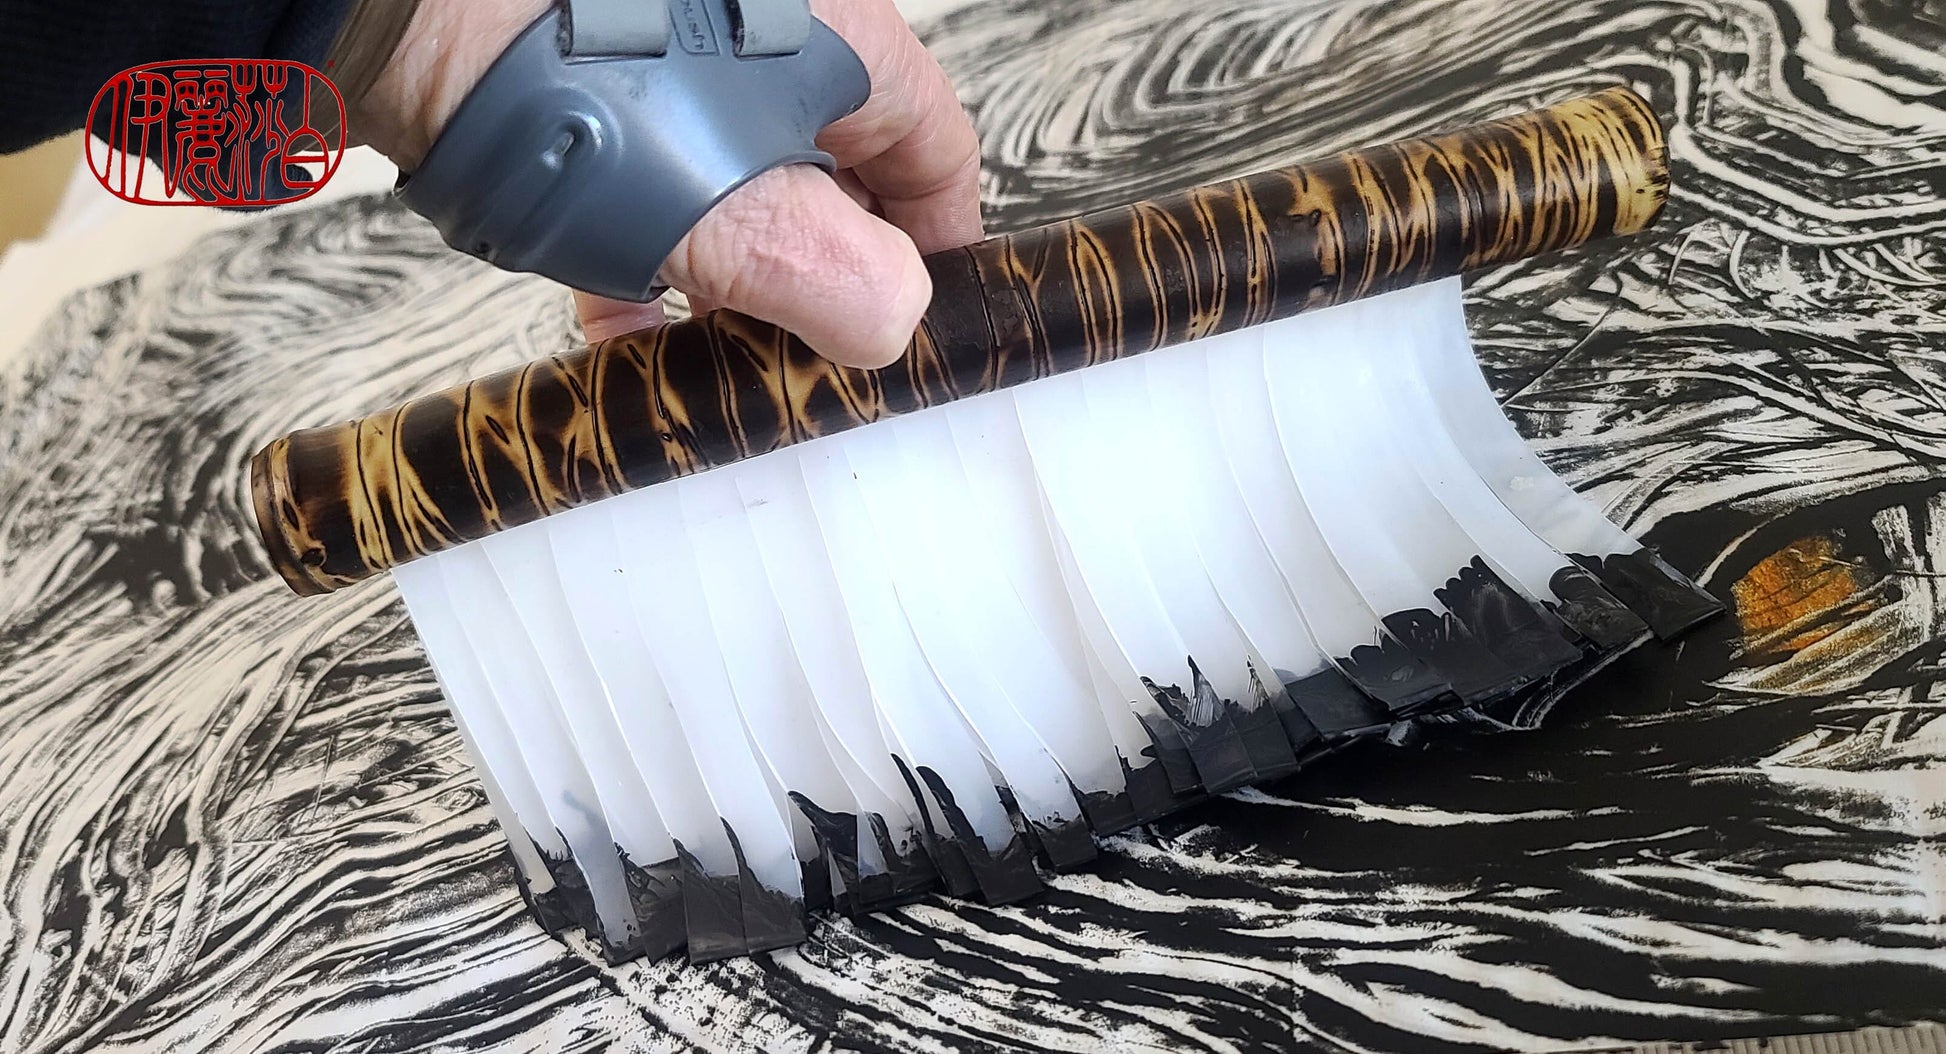 Brede siliconen penselen met bamboe handvaten (maat - 30 cm) SB 131 – Elizabeth Schowachert Art